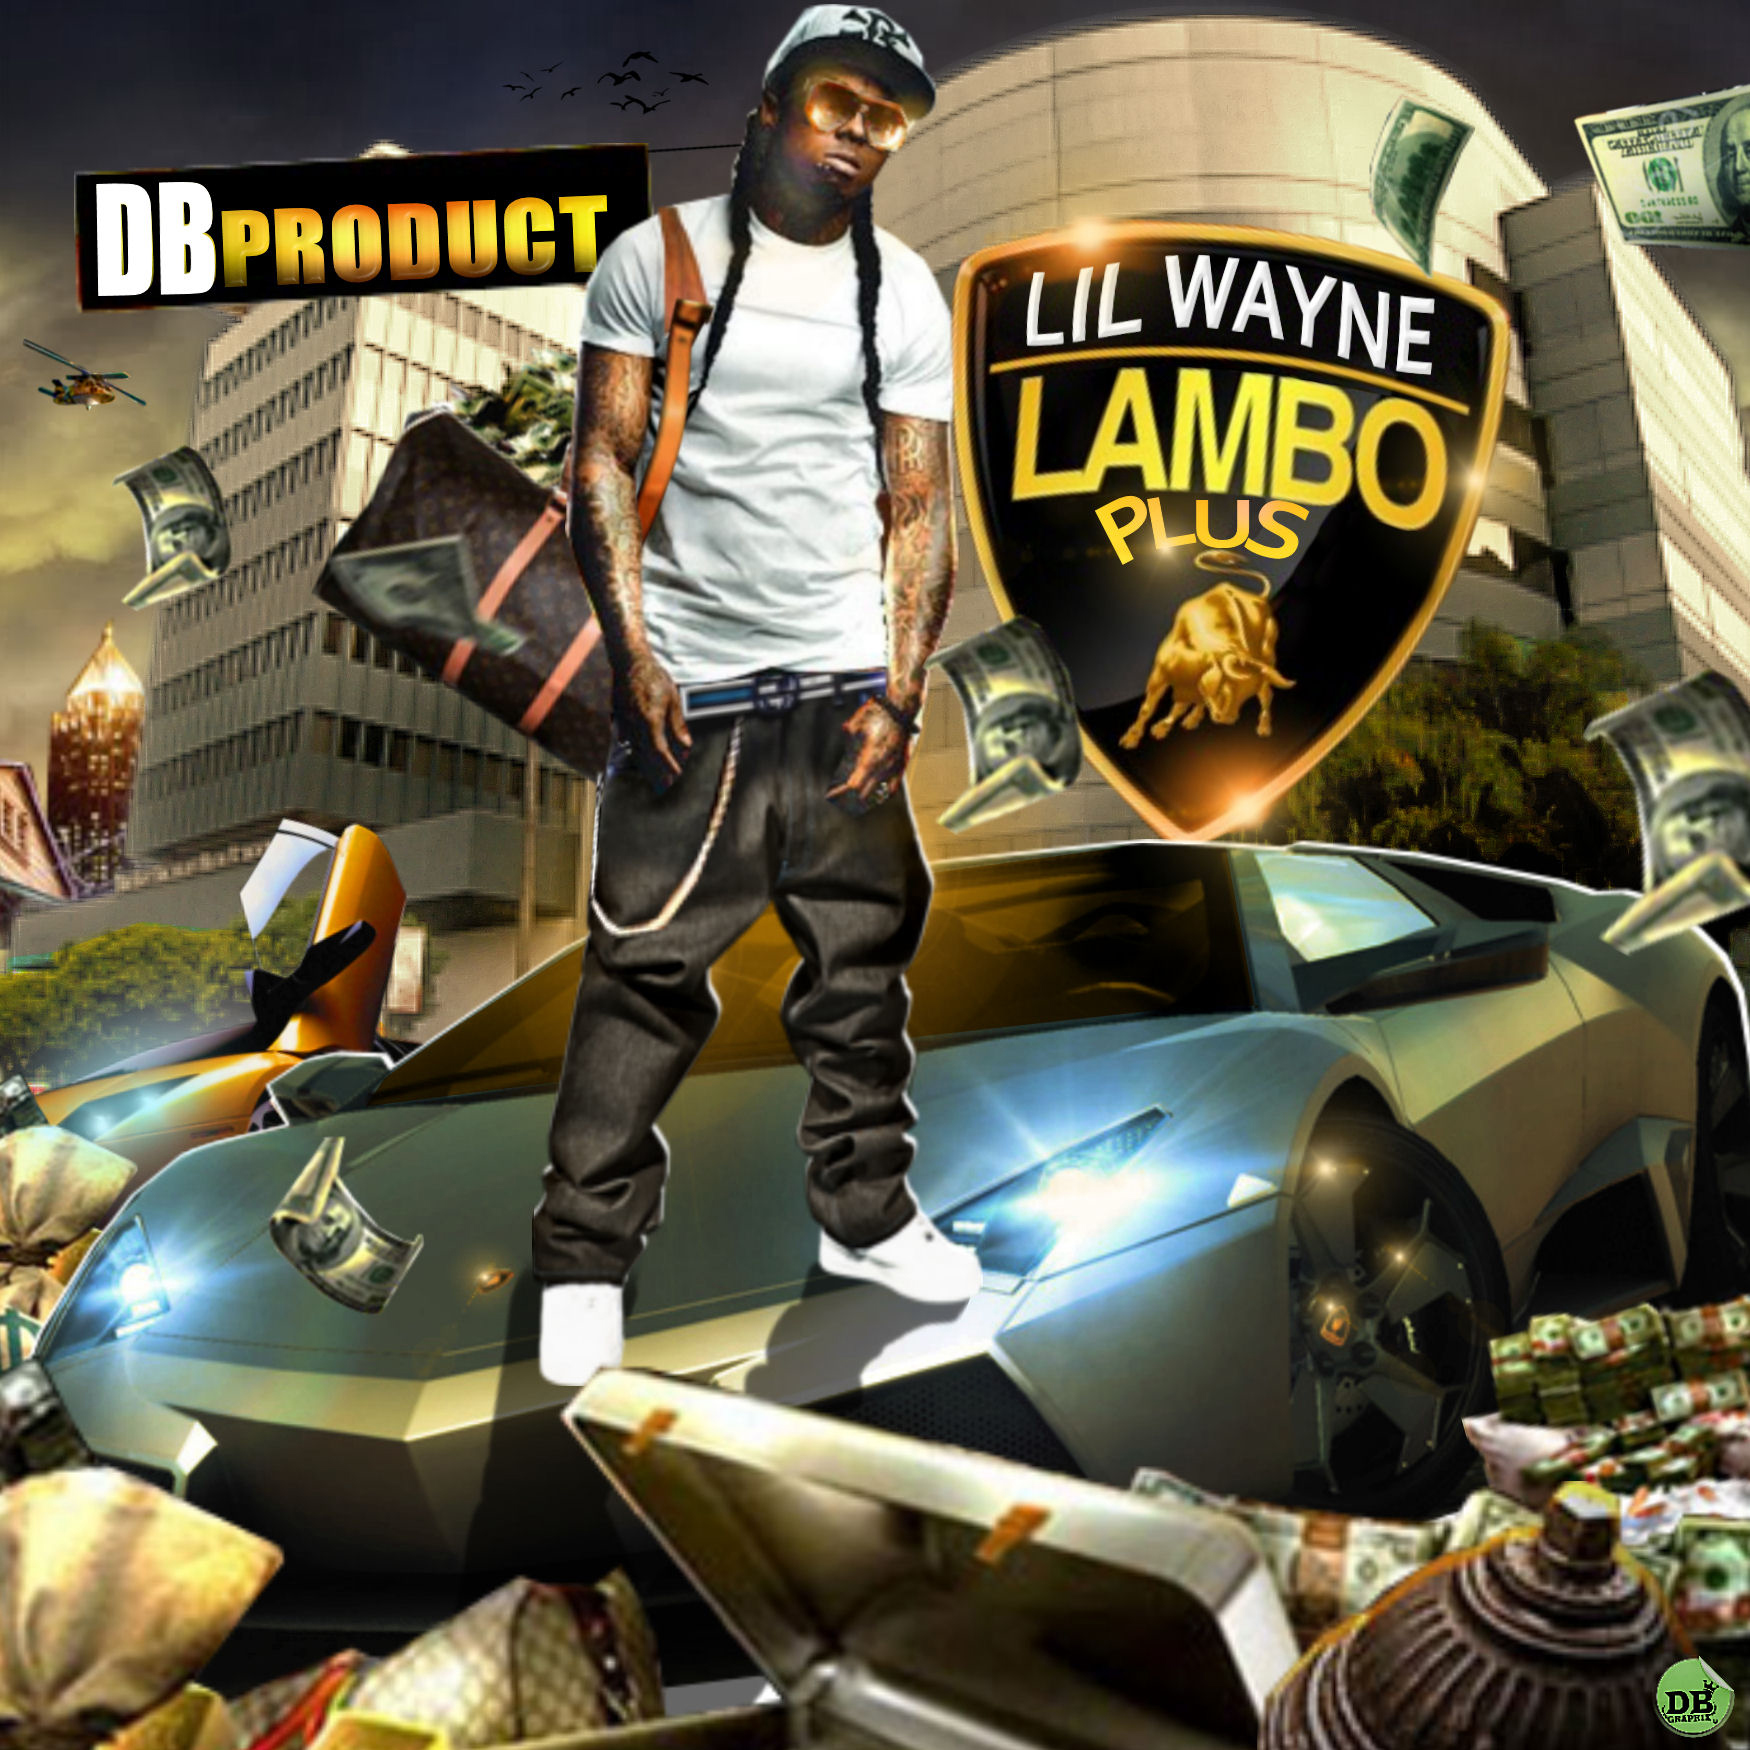 Lil Wayne - Lambo Plus | Buymixtapes.com